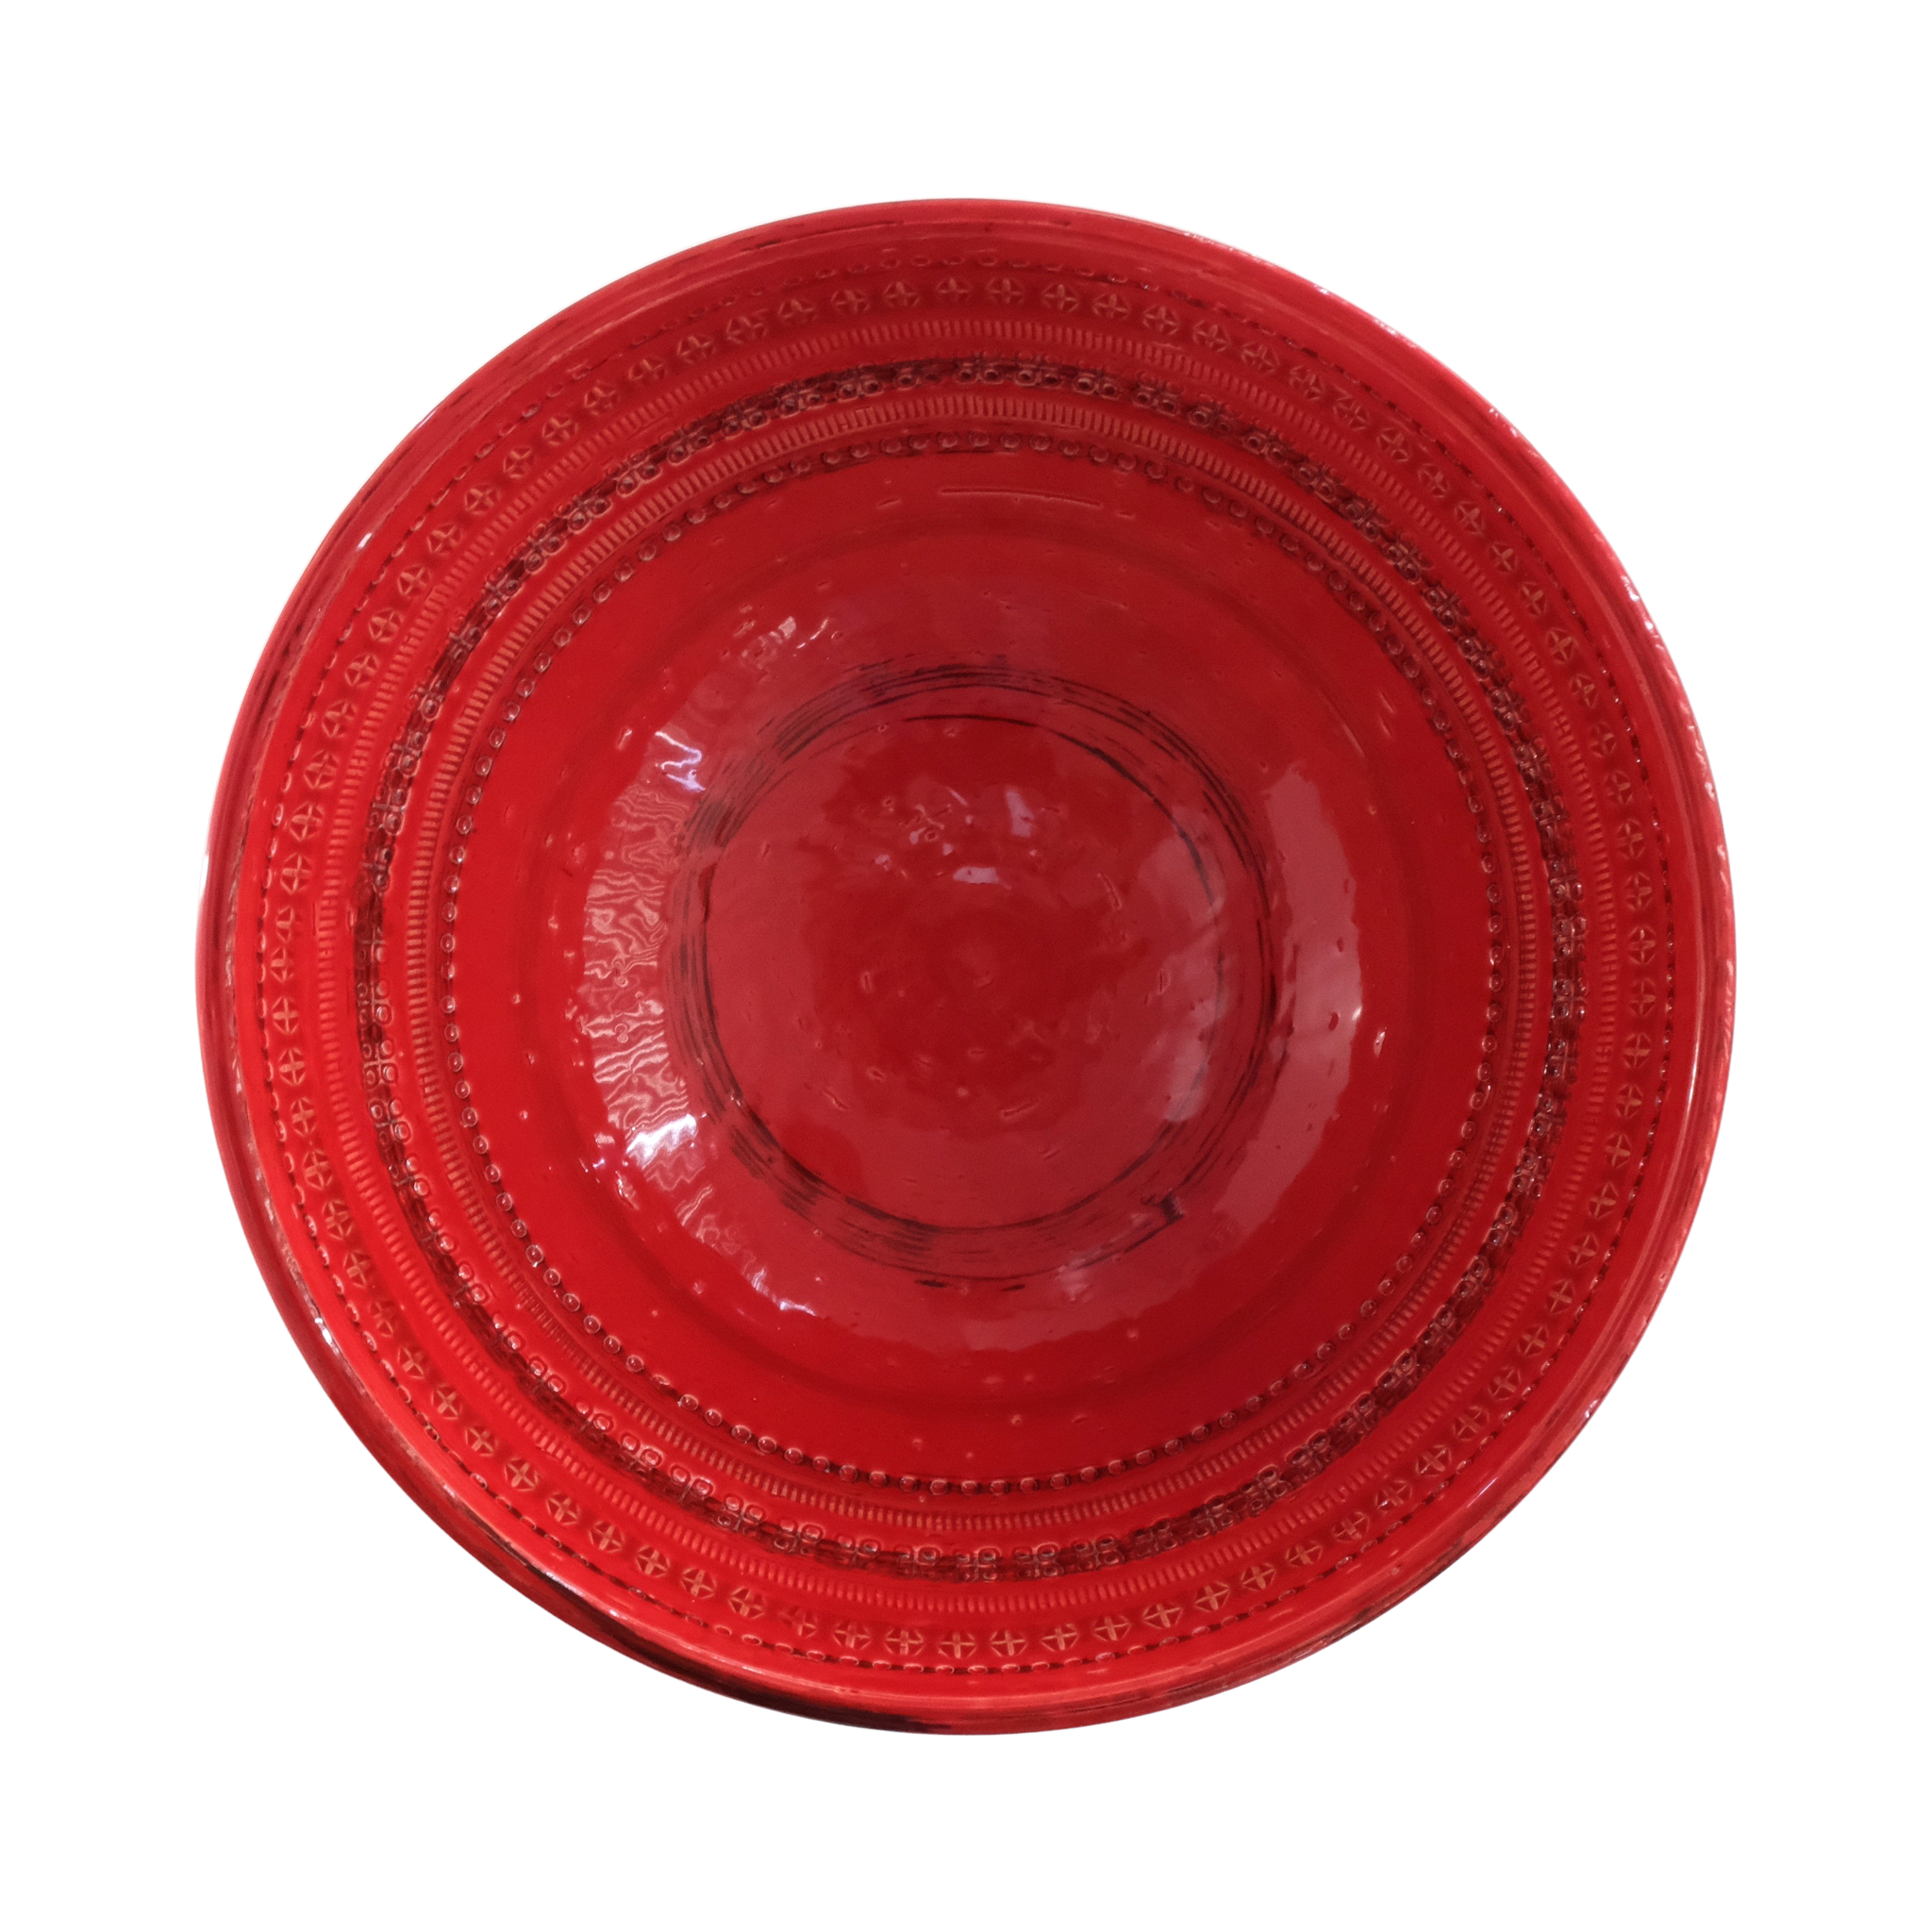 85806 Bitossi RIMINI ROSSO Decorative bowl Diam.33,5cm